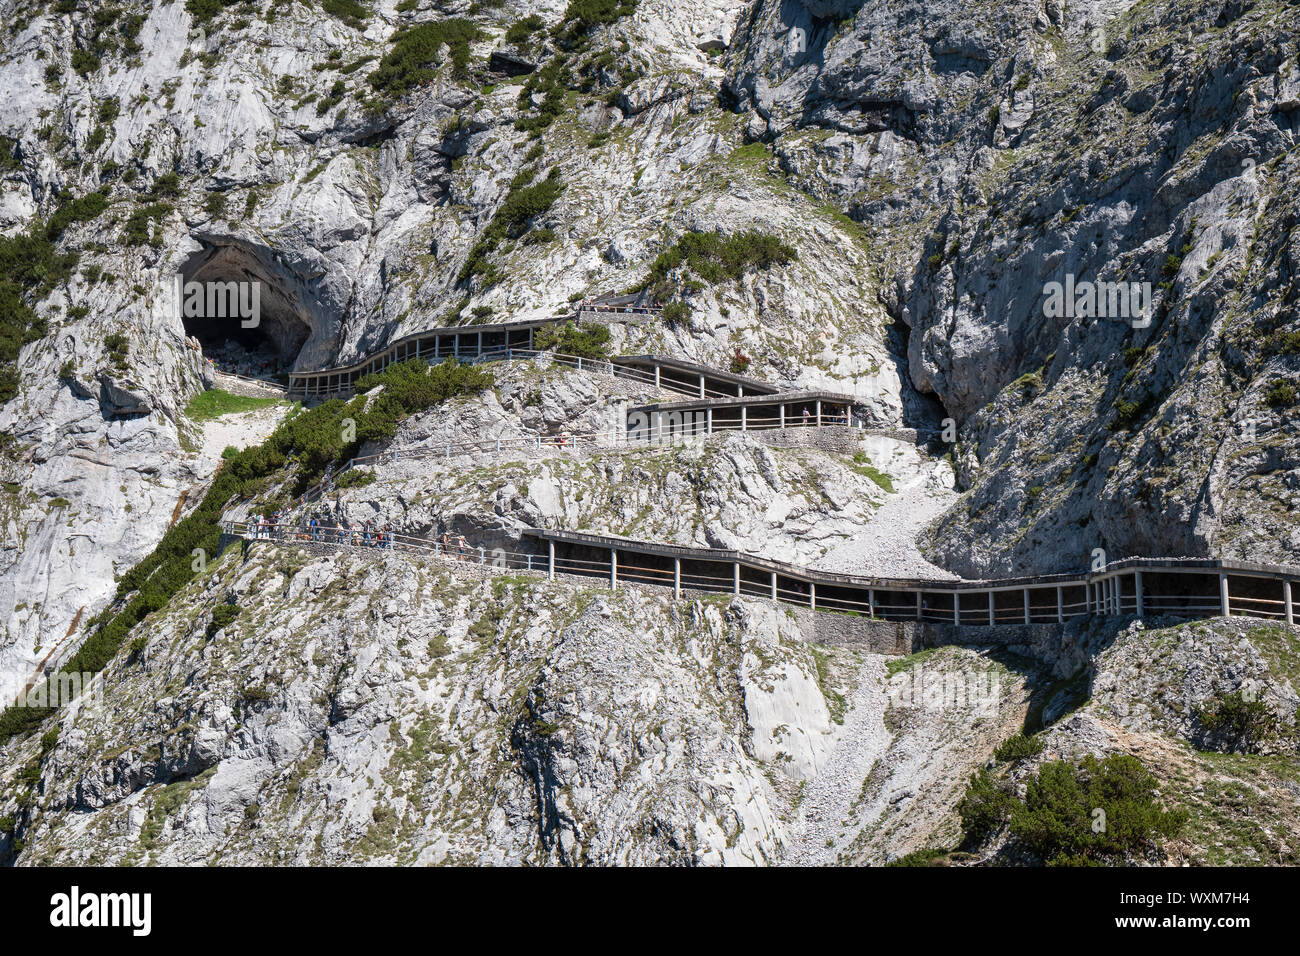 Werfen, Autriche - Juillet 23, 2019 : piste de montagne de grande caverne de glace Eisriesenwelt à journée d'été dans les Alpes en Autriche, le 23 juillet 2019. Banque D'Images